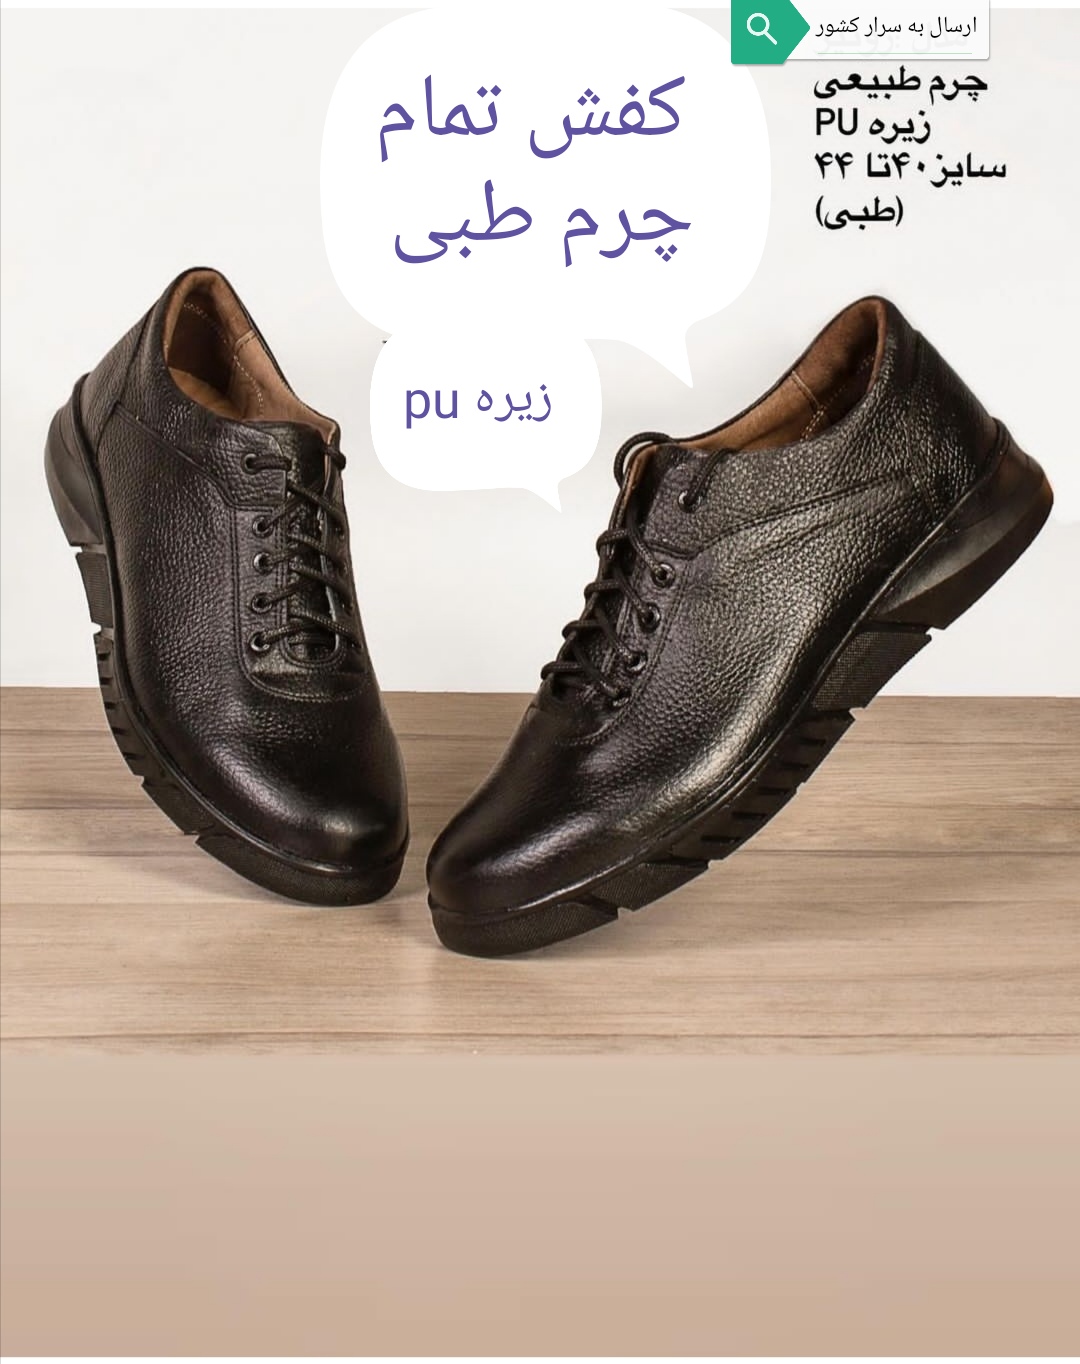 کفش طبی راحتی تمام چرم مردانه نوین چرم تبریز مدل اسپورت رونیز مخصوص پیاده روی و مجلسی